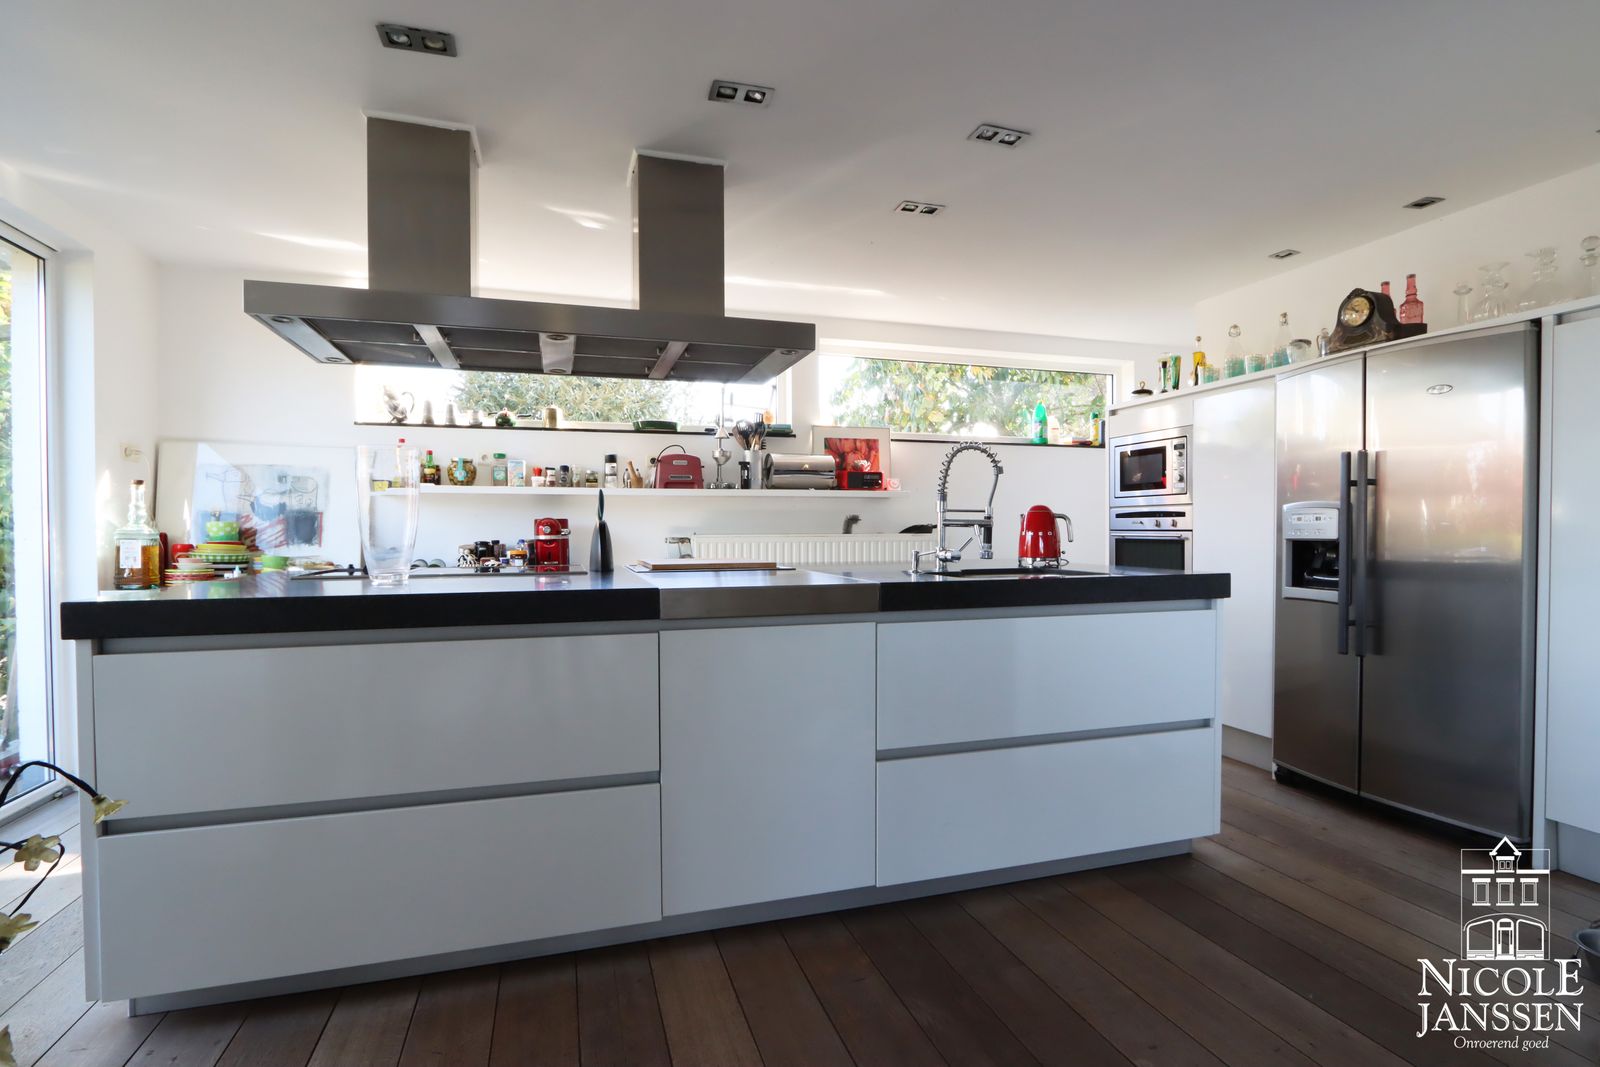 10 Nicole Janssen huis te koop Molenbeersel Venderstraat 5D (keuken 2).jpg